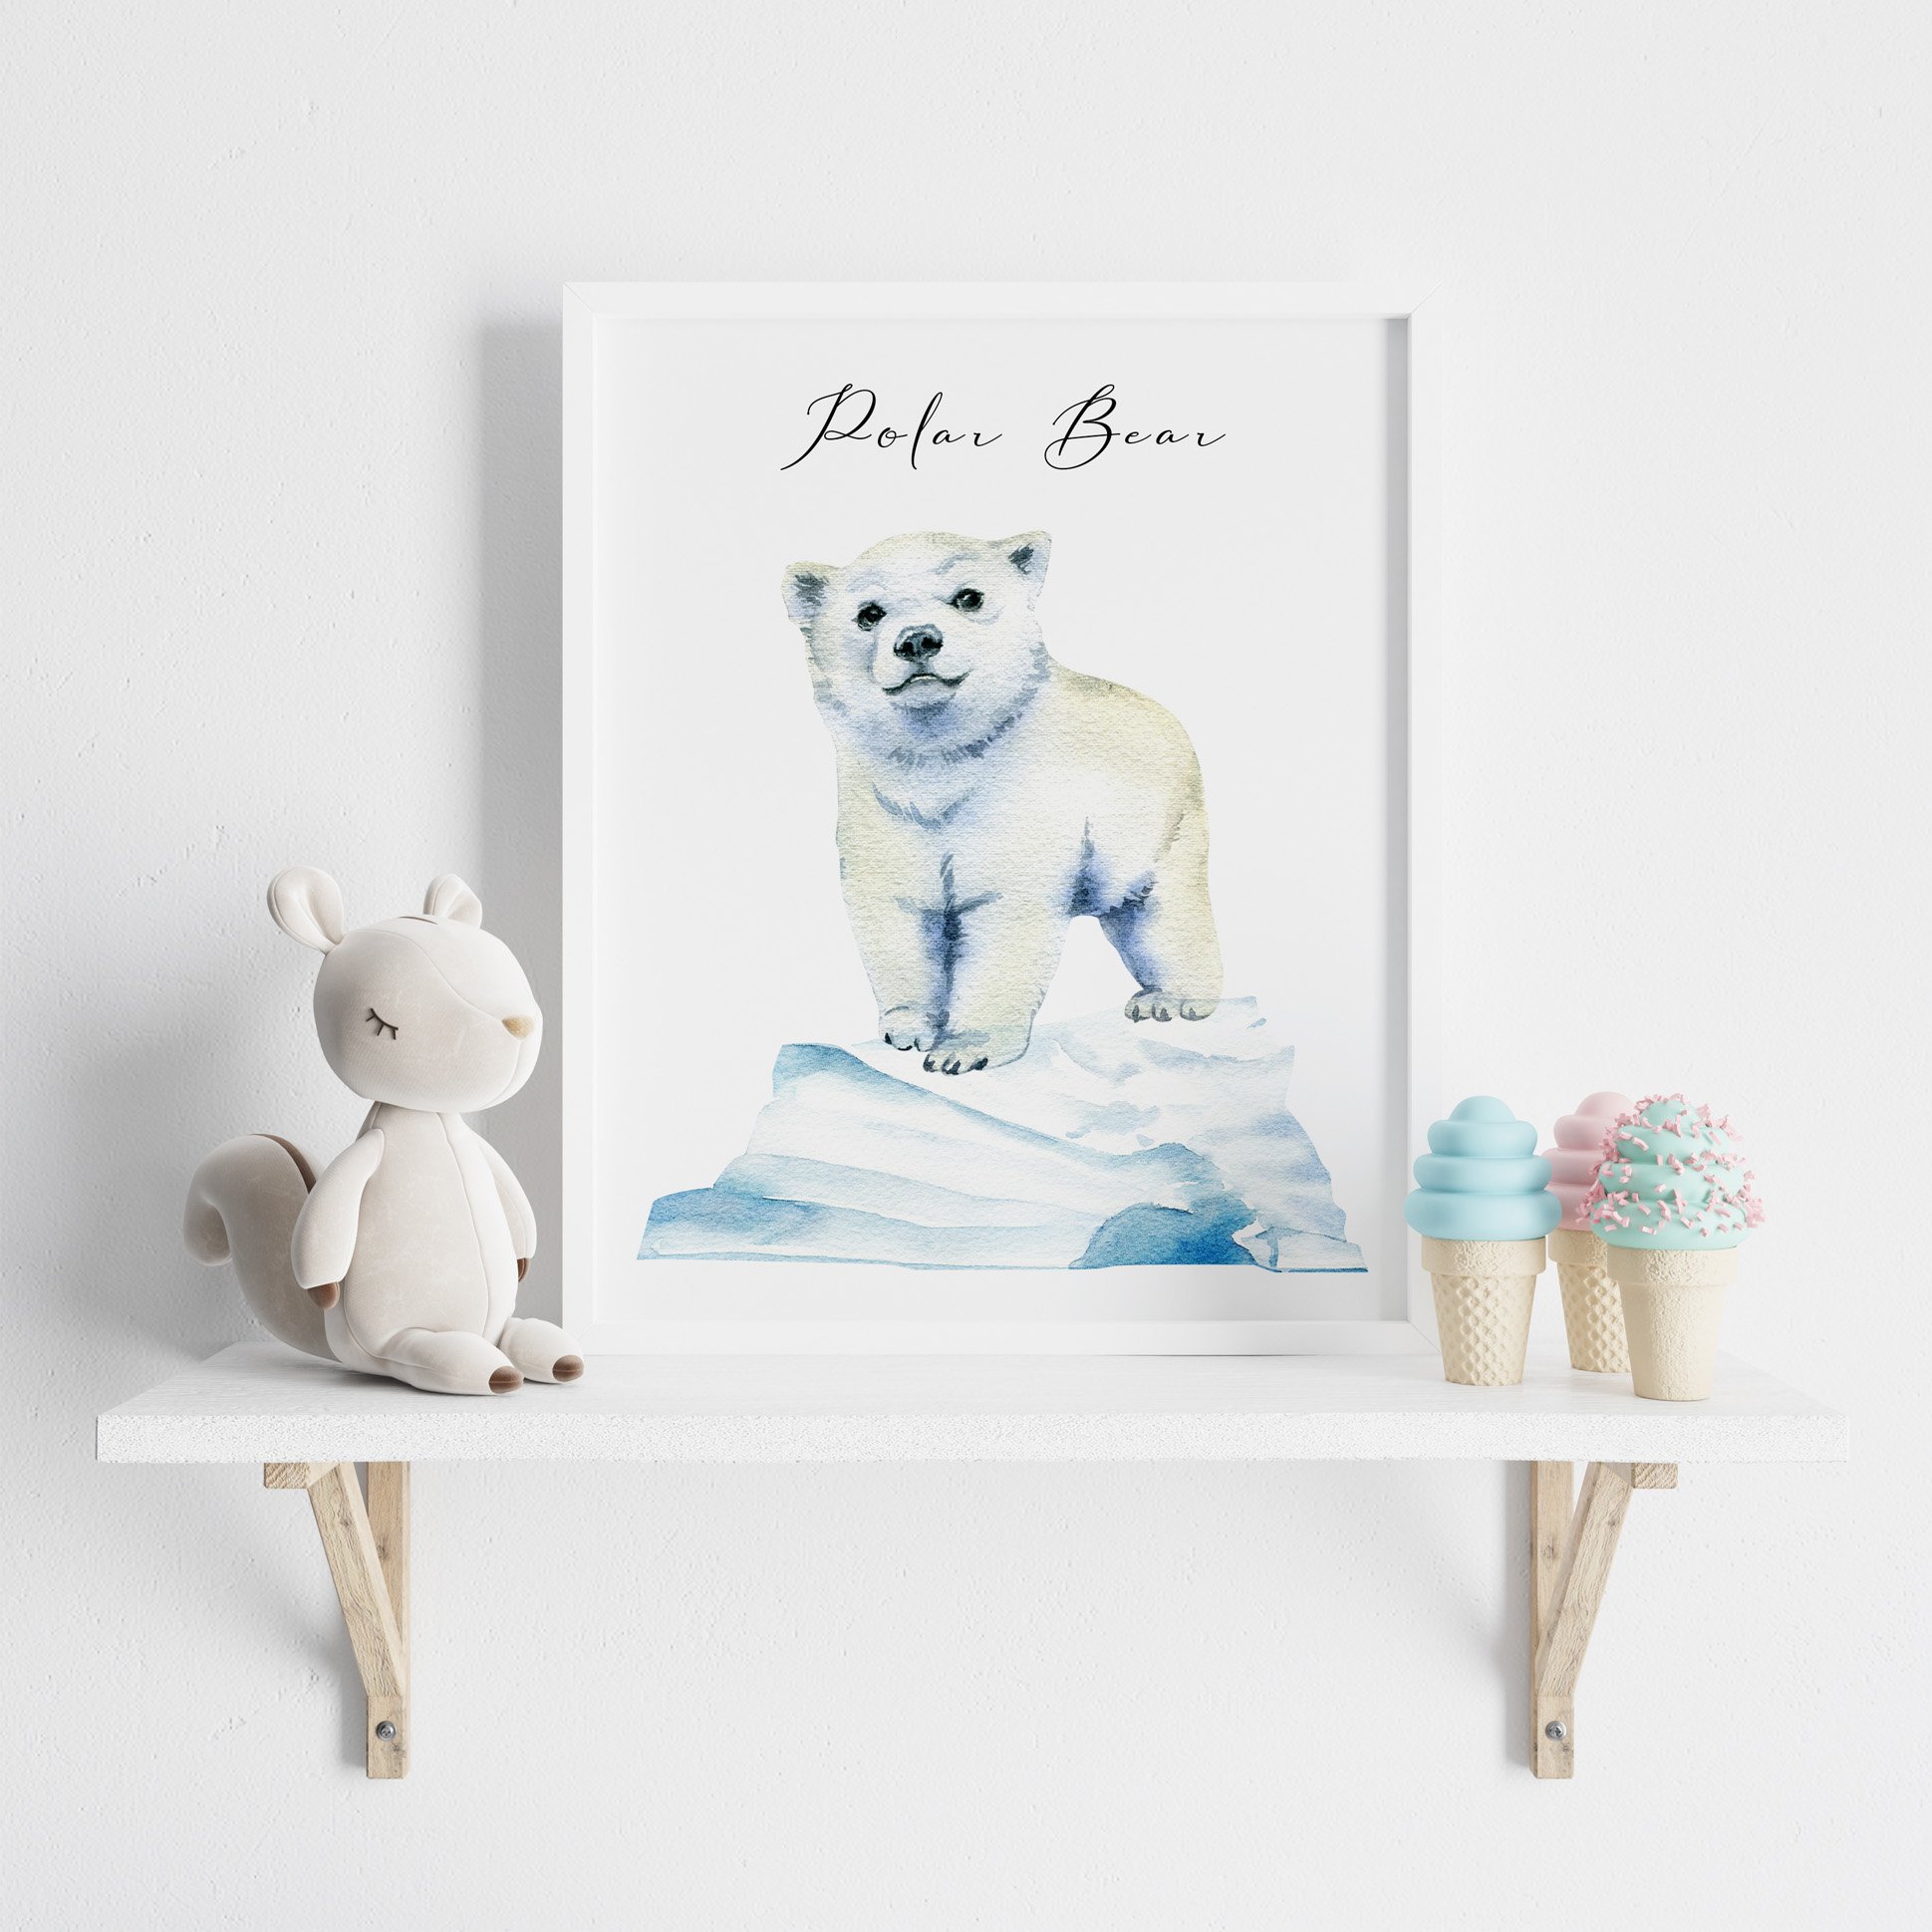 Cute little polar bear on a poster.